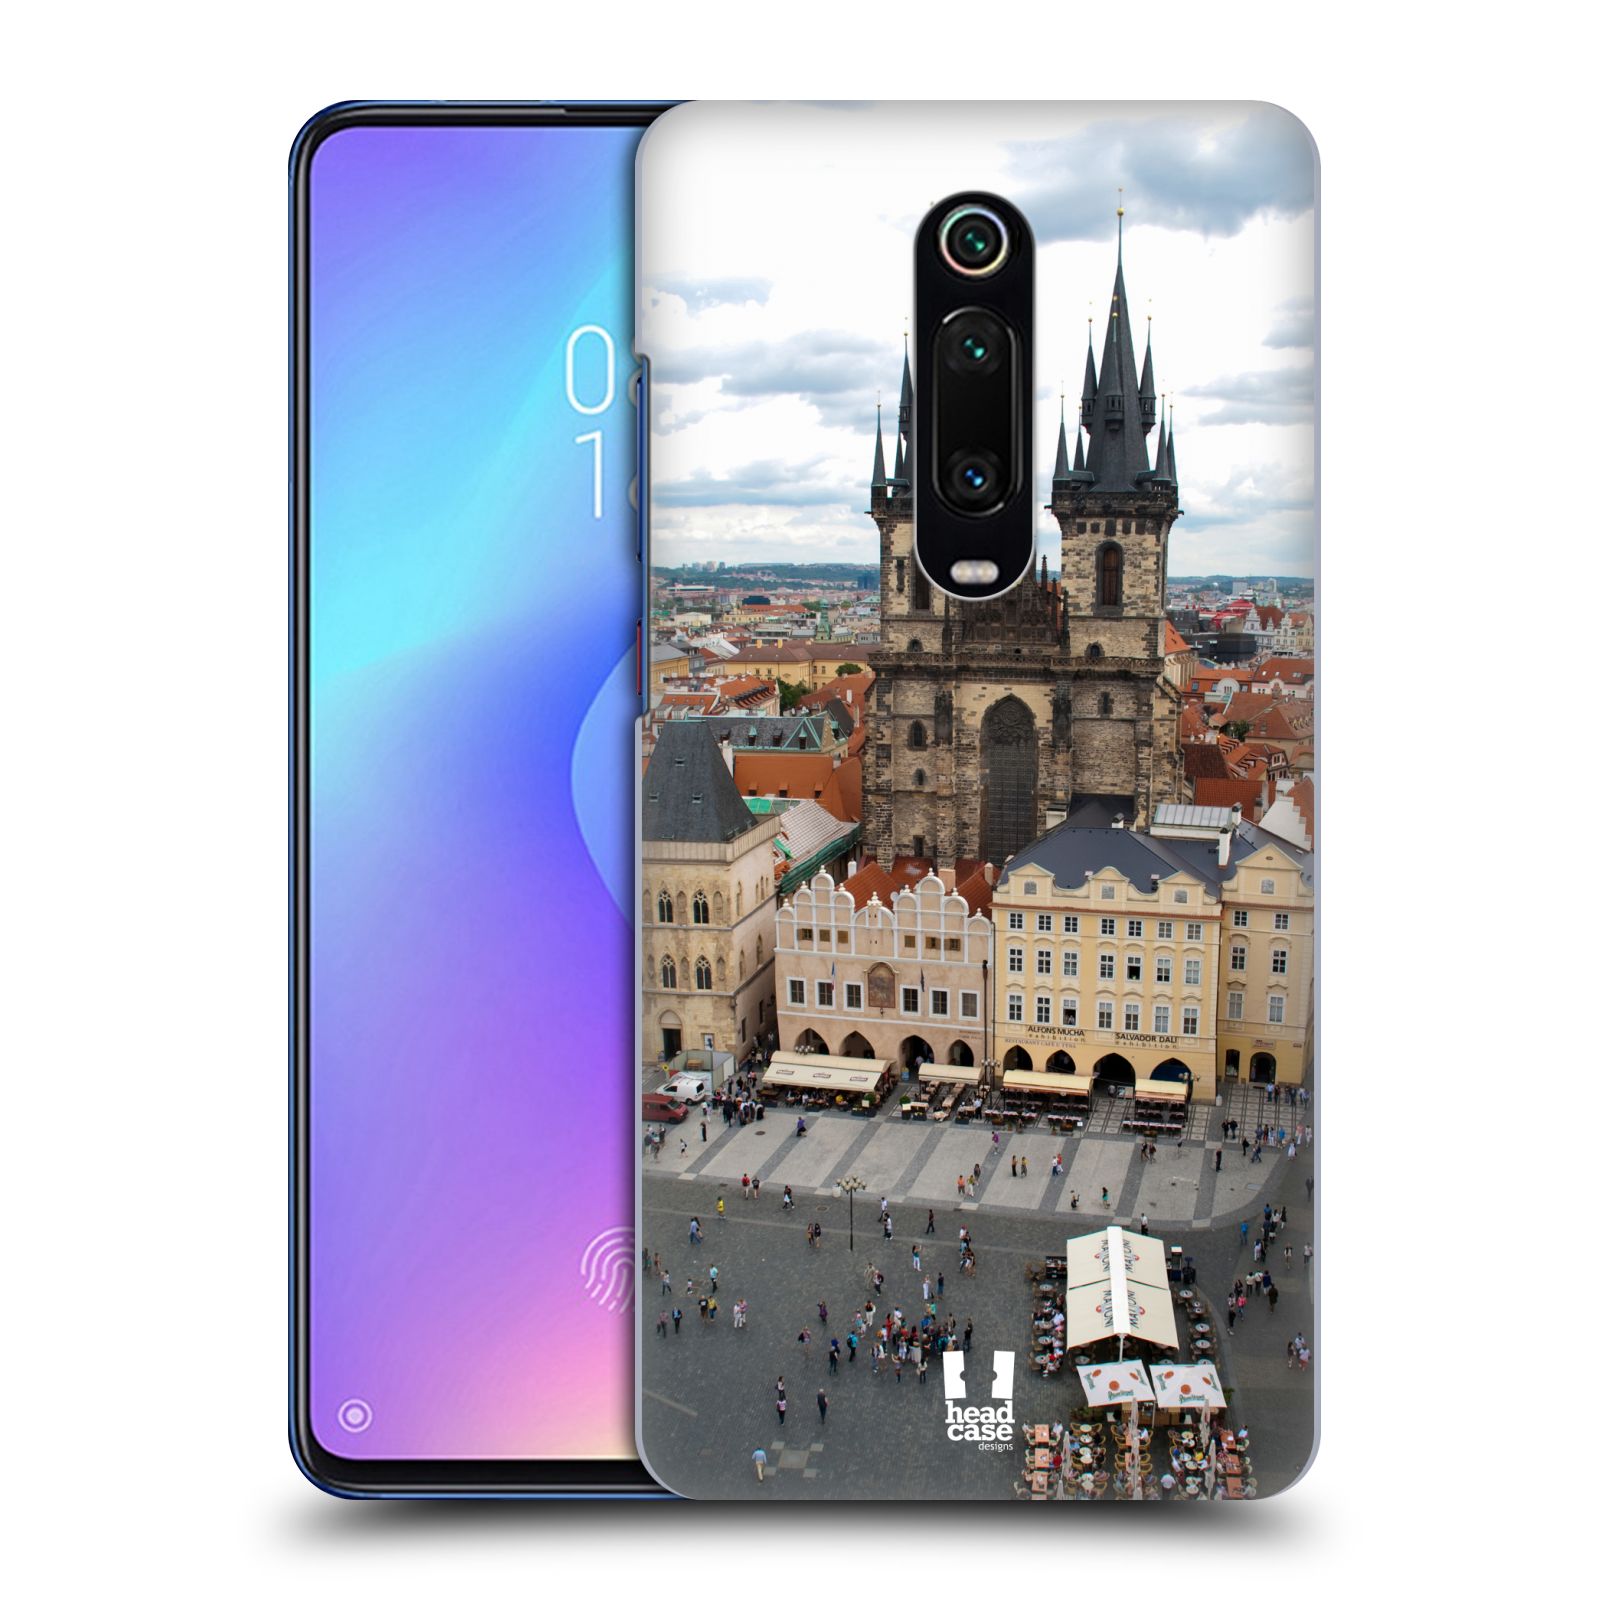 Pouzdro na mobil Xiaomi Mi 9T PRO - HEAD CASE - vzor Města foto náměstí ČESKÁ REPUBLIKA, PRAHA, STAROMĚSTSKÉ NÁMĚSTÍ